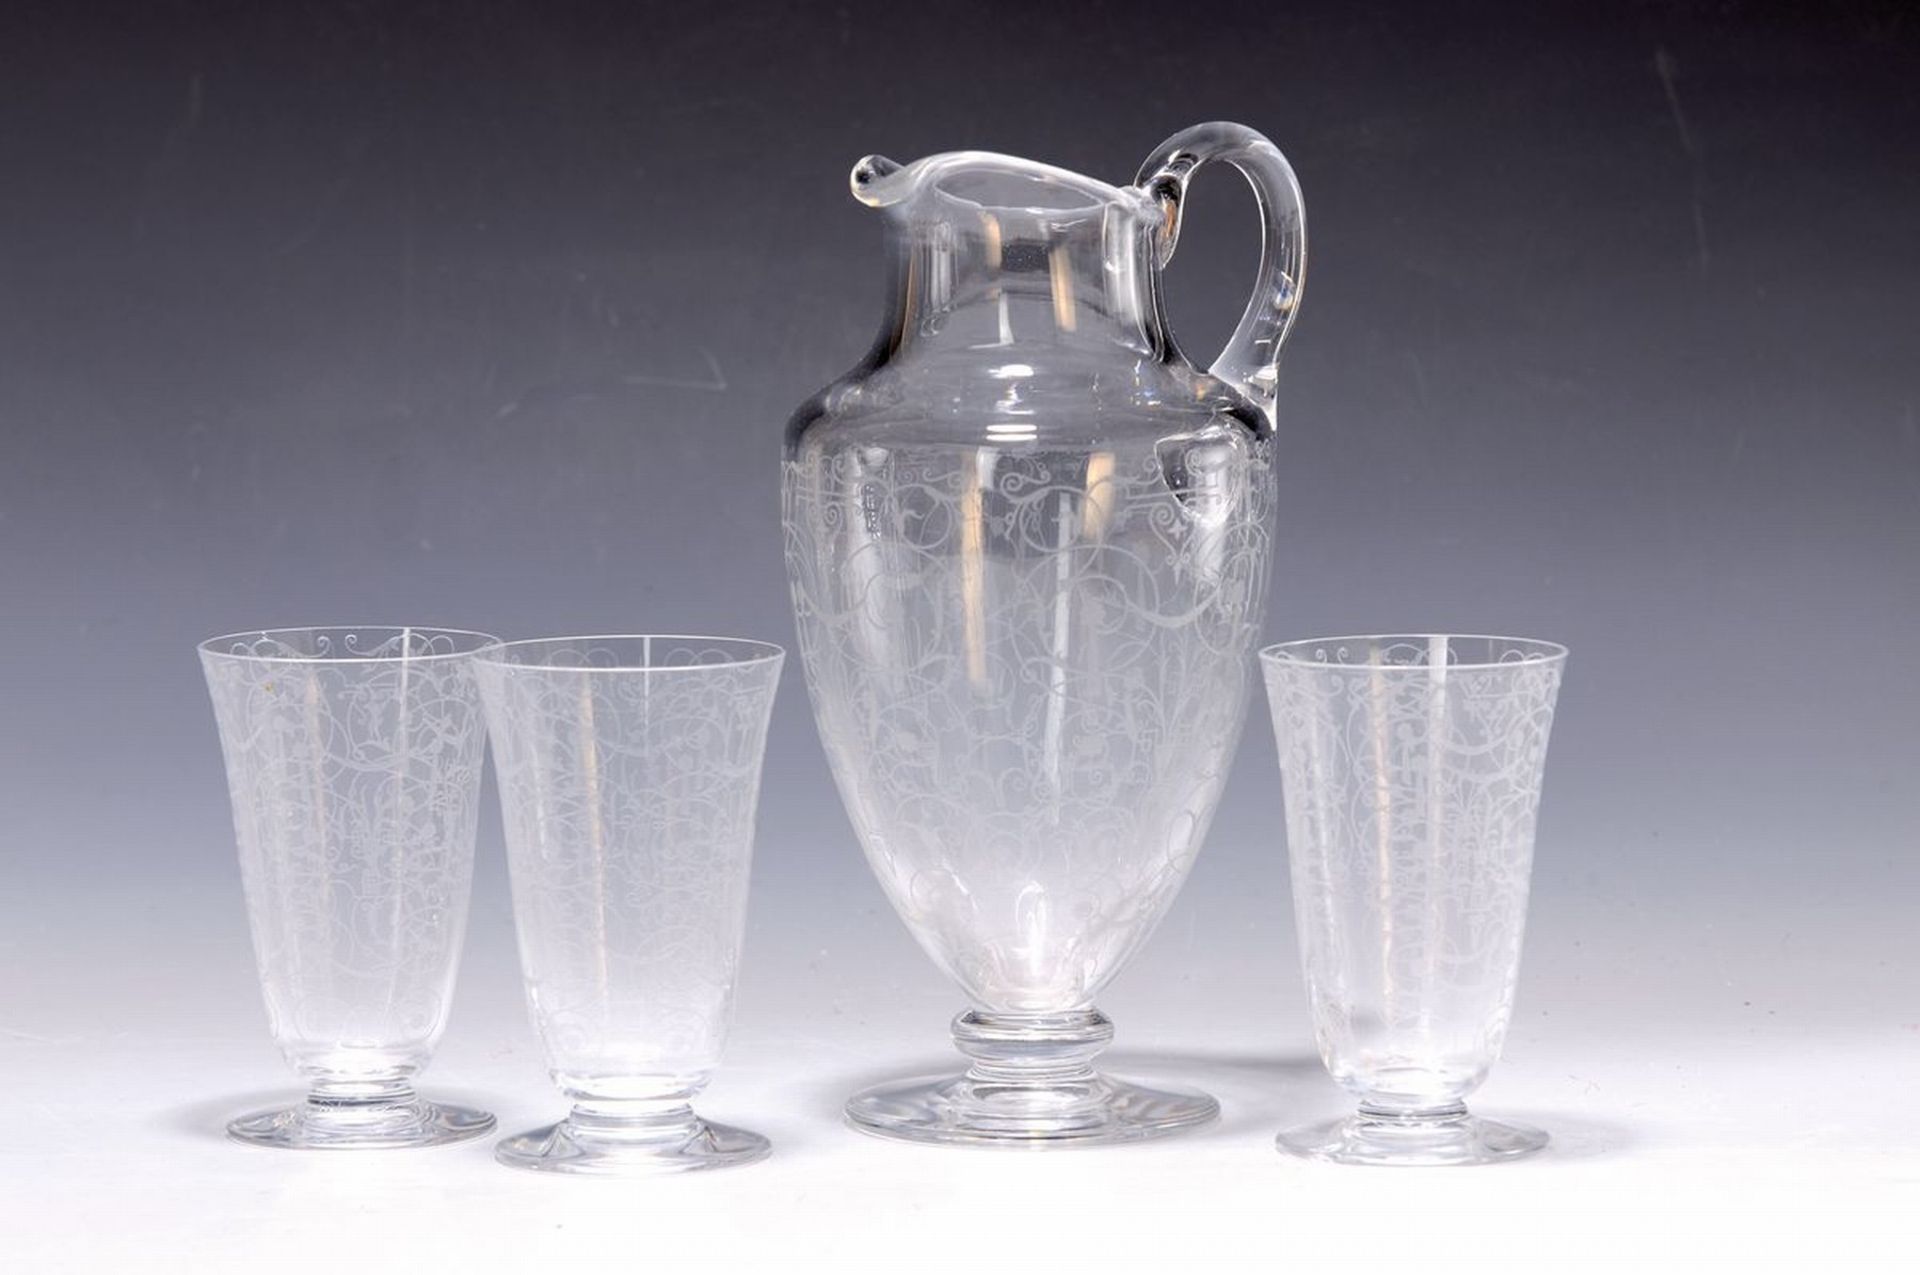 Krug und 5 Gläser, St. Louis, 1930er J., farbloses Glas